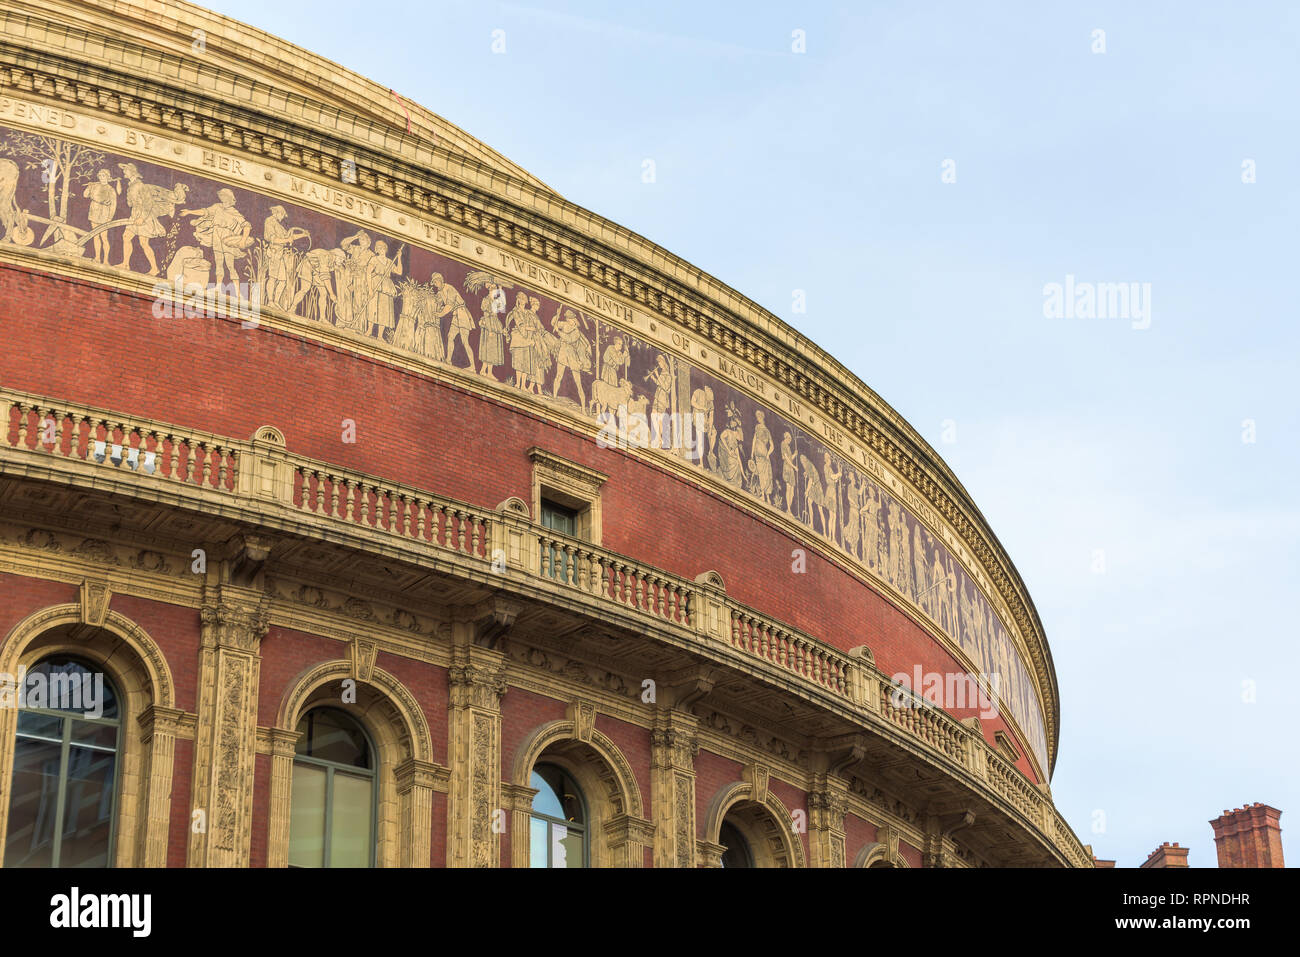 El Royal Albert Hall, una sala de conciertos en el borde norte de South Kensington, Londres, que ha celebrado los conciertos Proms anualmente cada verano. Foto de stock